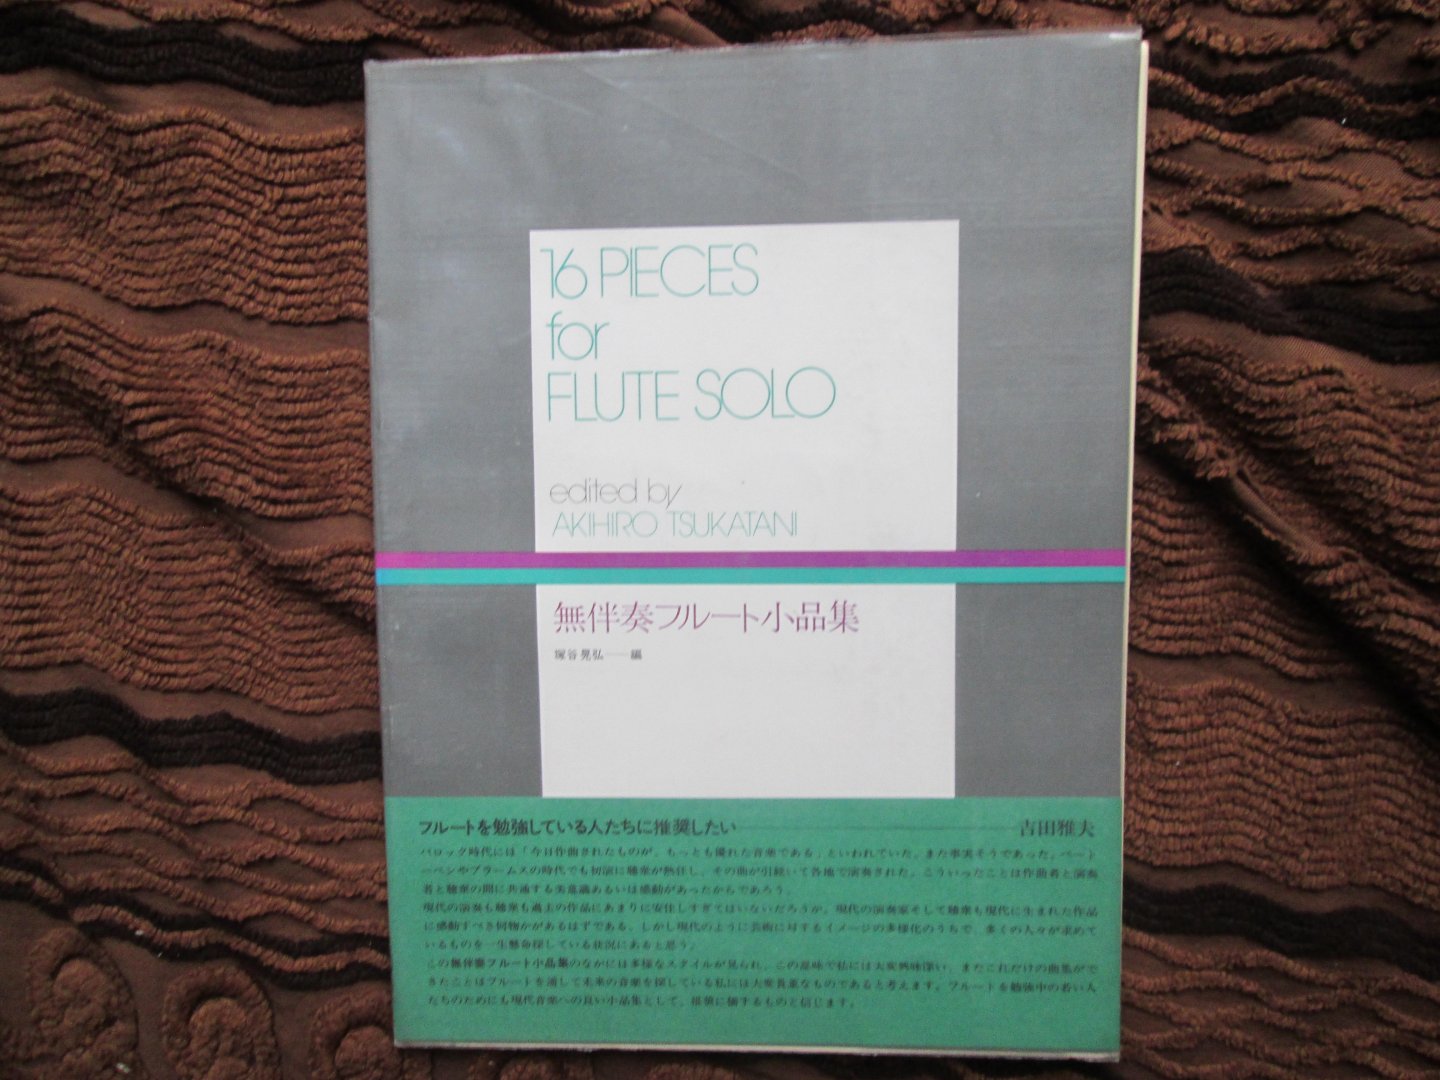 Tsukatani , Akihiro ( editor ) - 16 PIECES FOR FLUTE SOLO